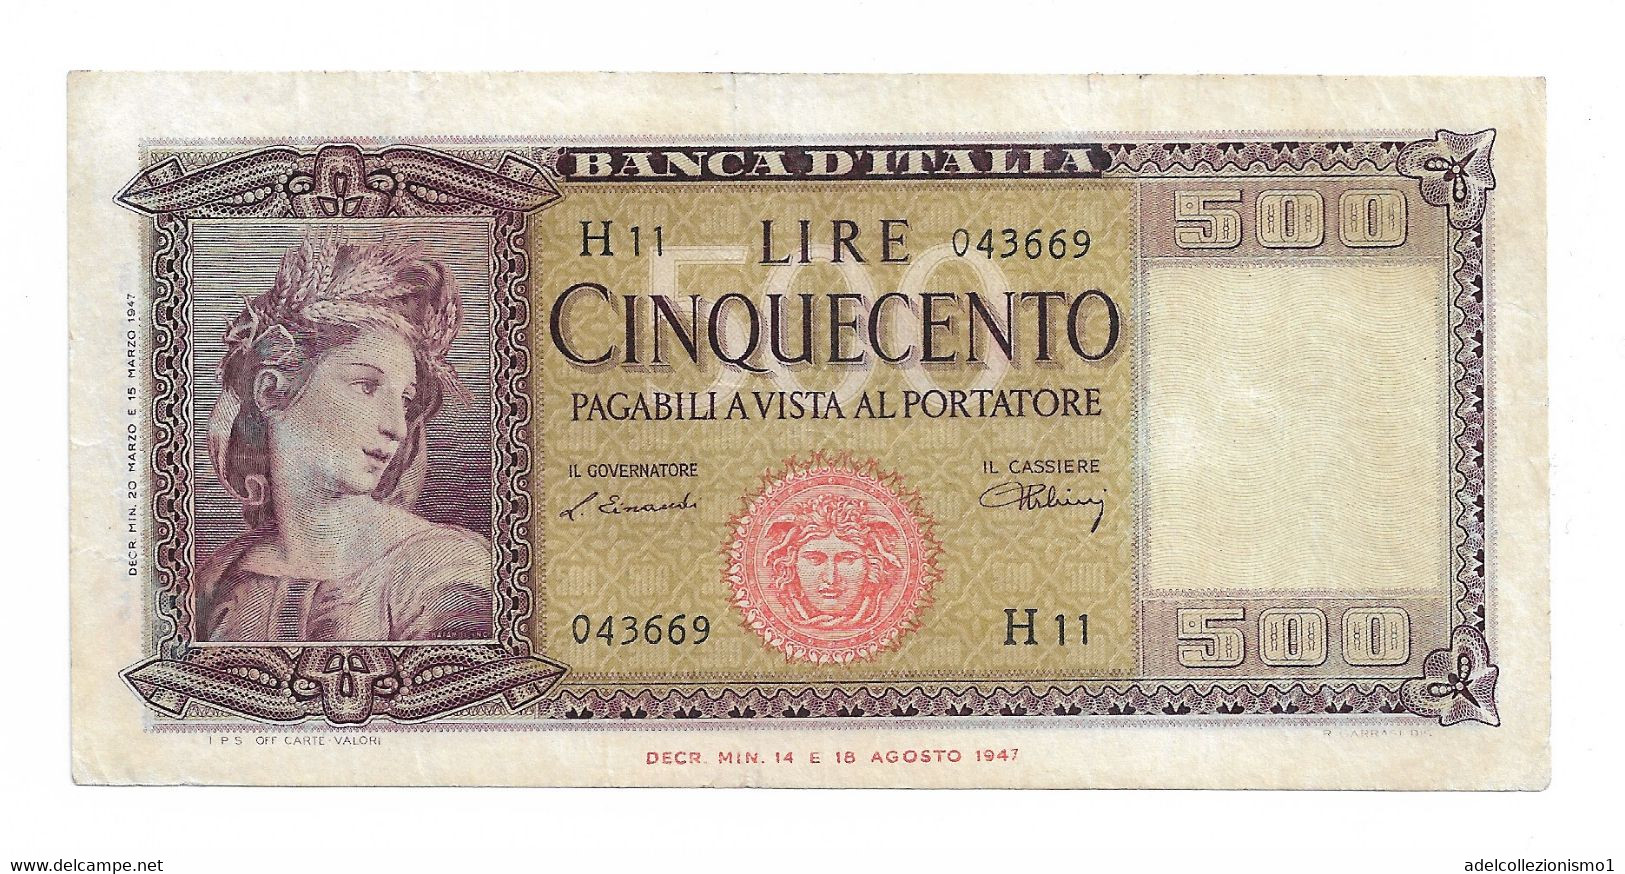 29603) 500 LIRE ITALIA ORNATA DI SPIGHE MEDUSA DECR 20 MARZO 1947-SPL - 500 Lire